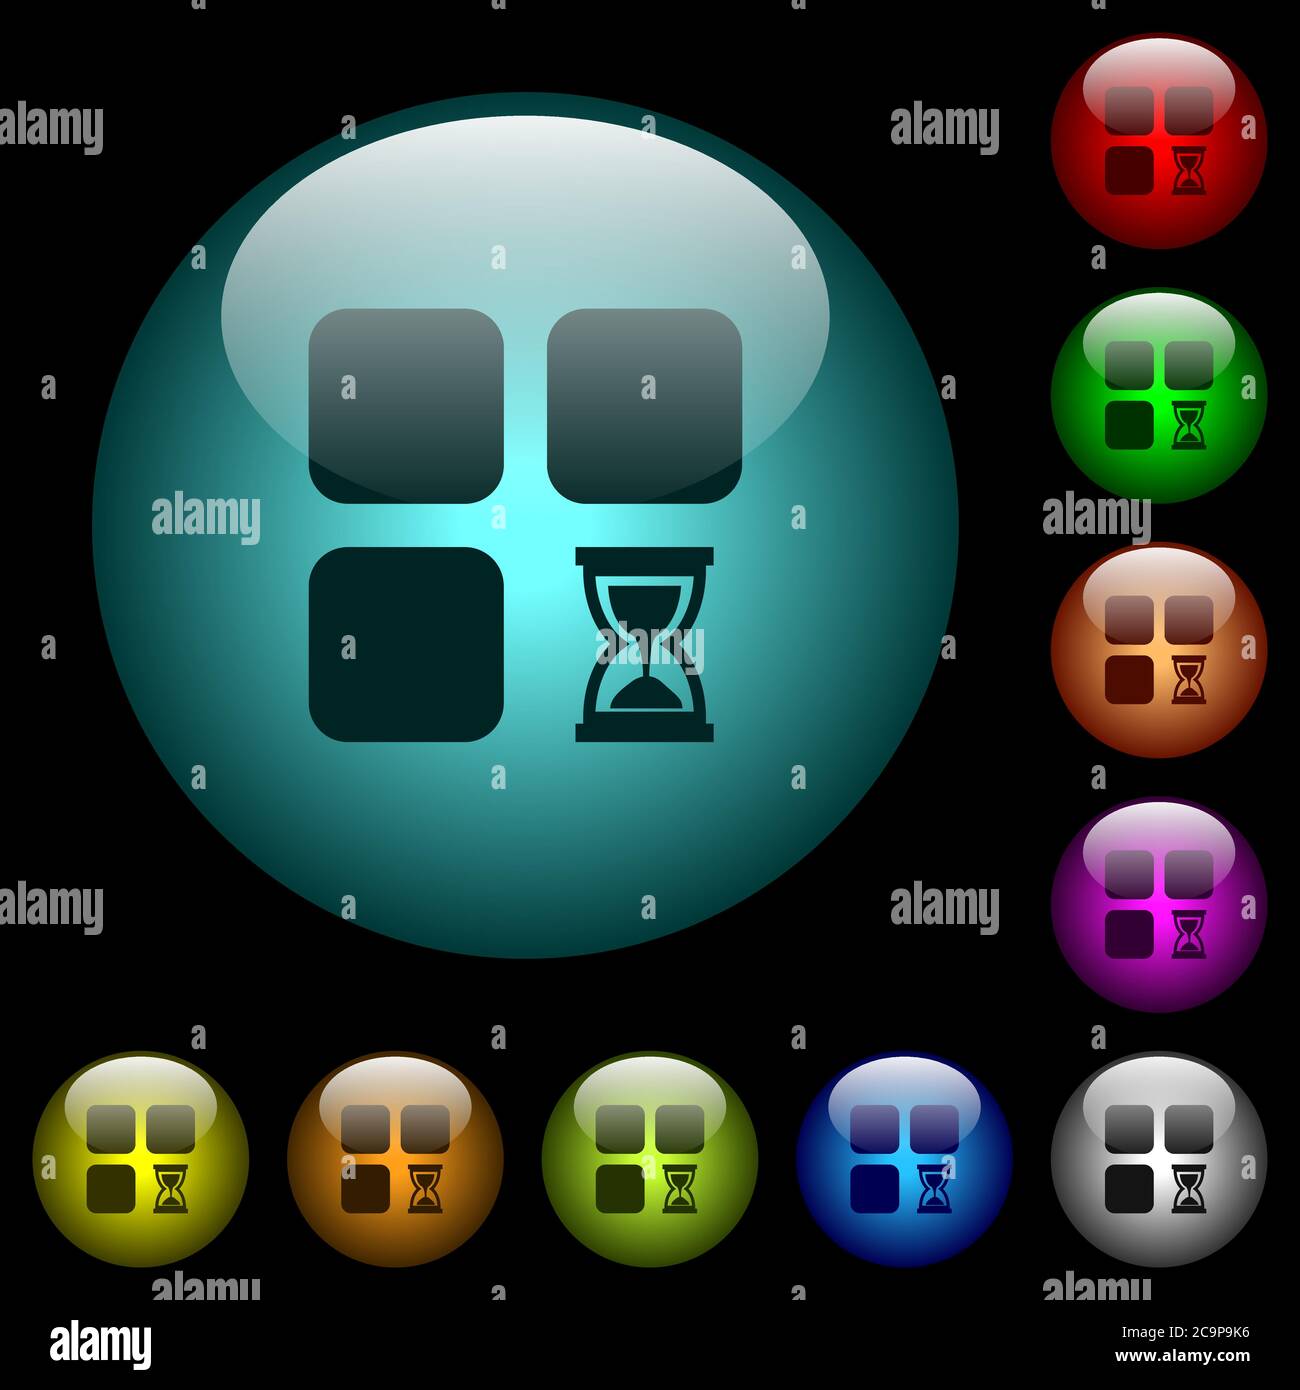 Iconos de componente en espera en color botones de cristal esféricos iluminados sobre fondo negro. Se puede utilizar para plantillas negras u oscuras Ilustración del Vector